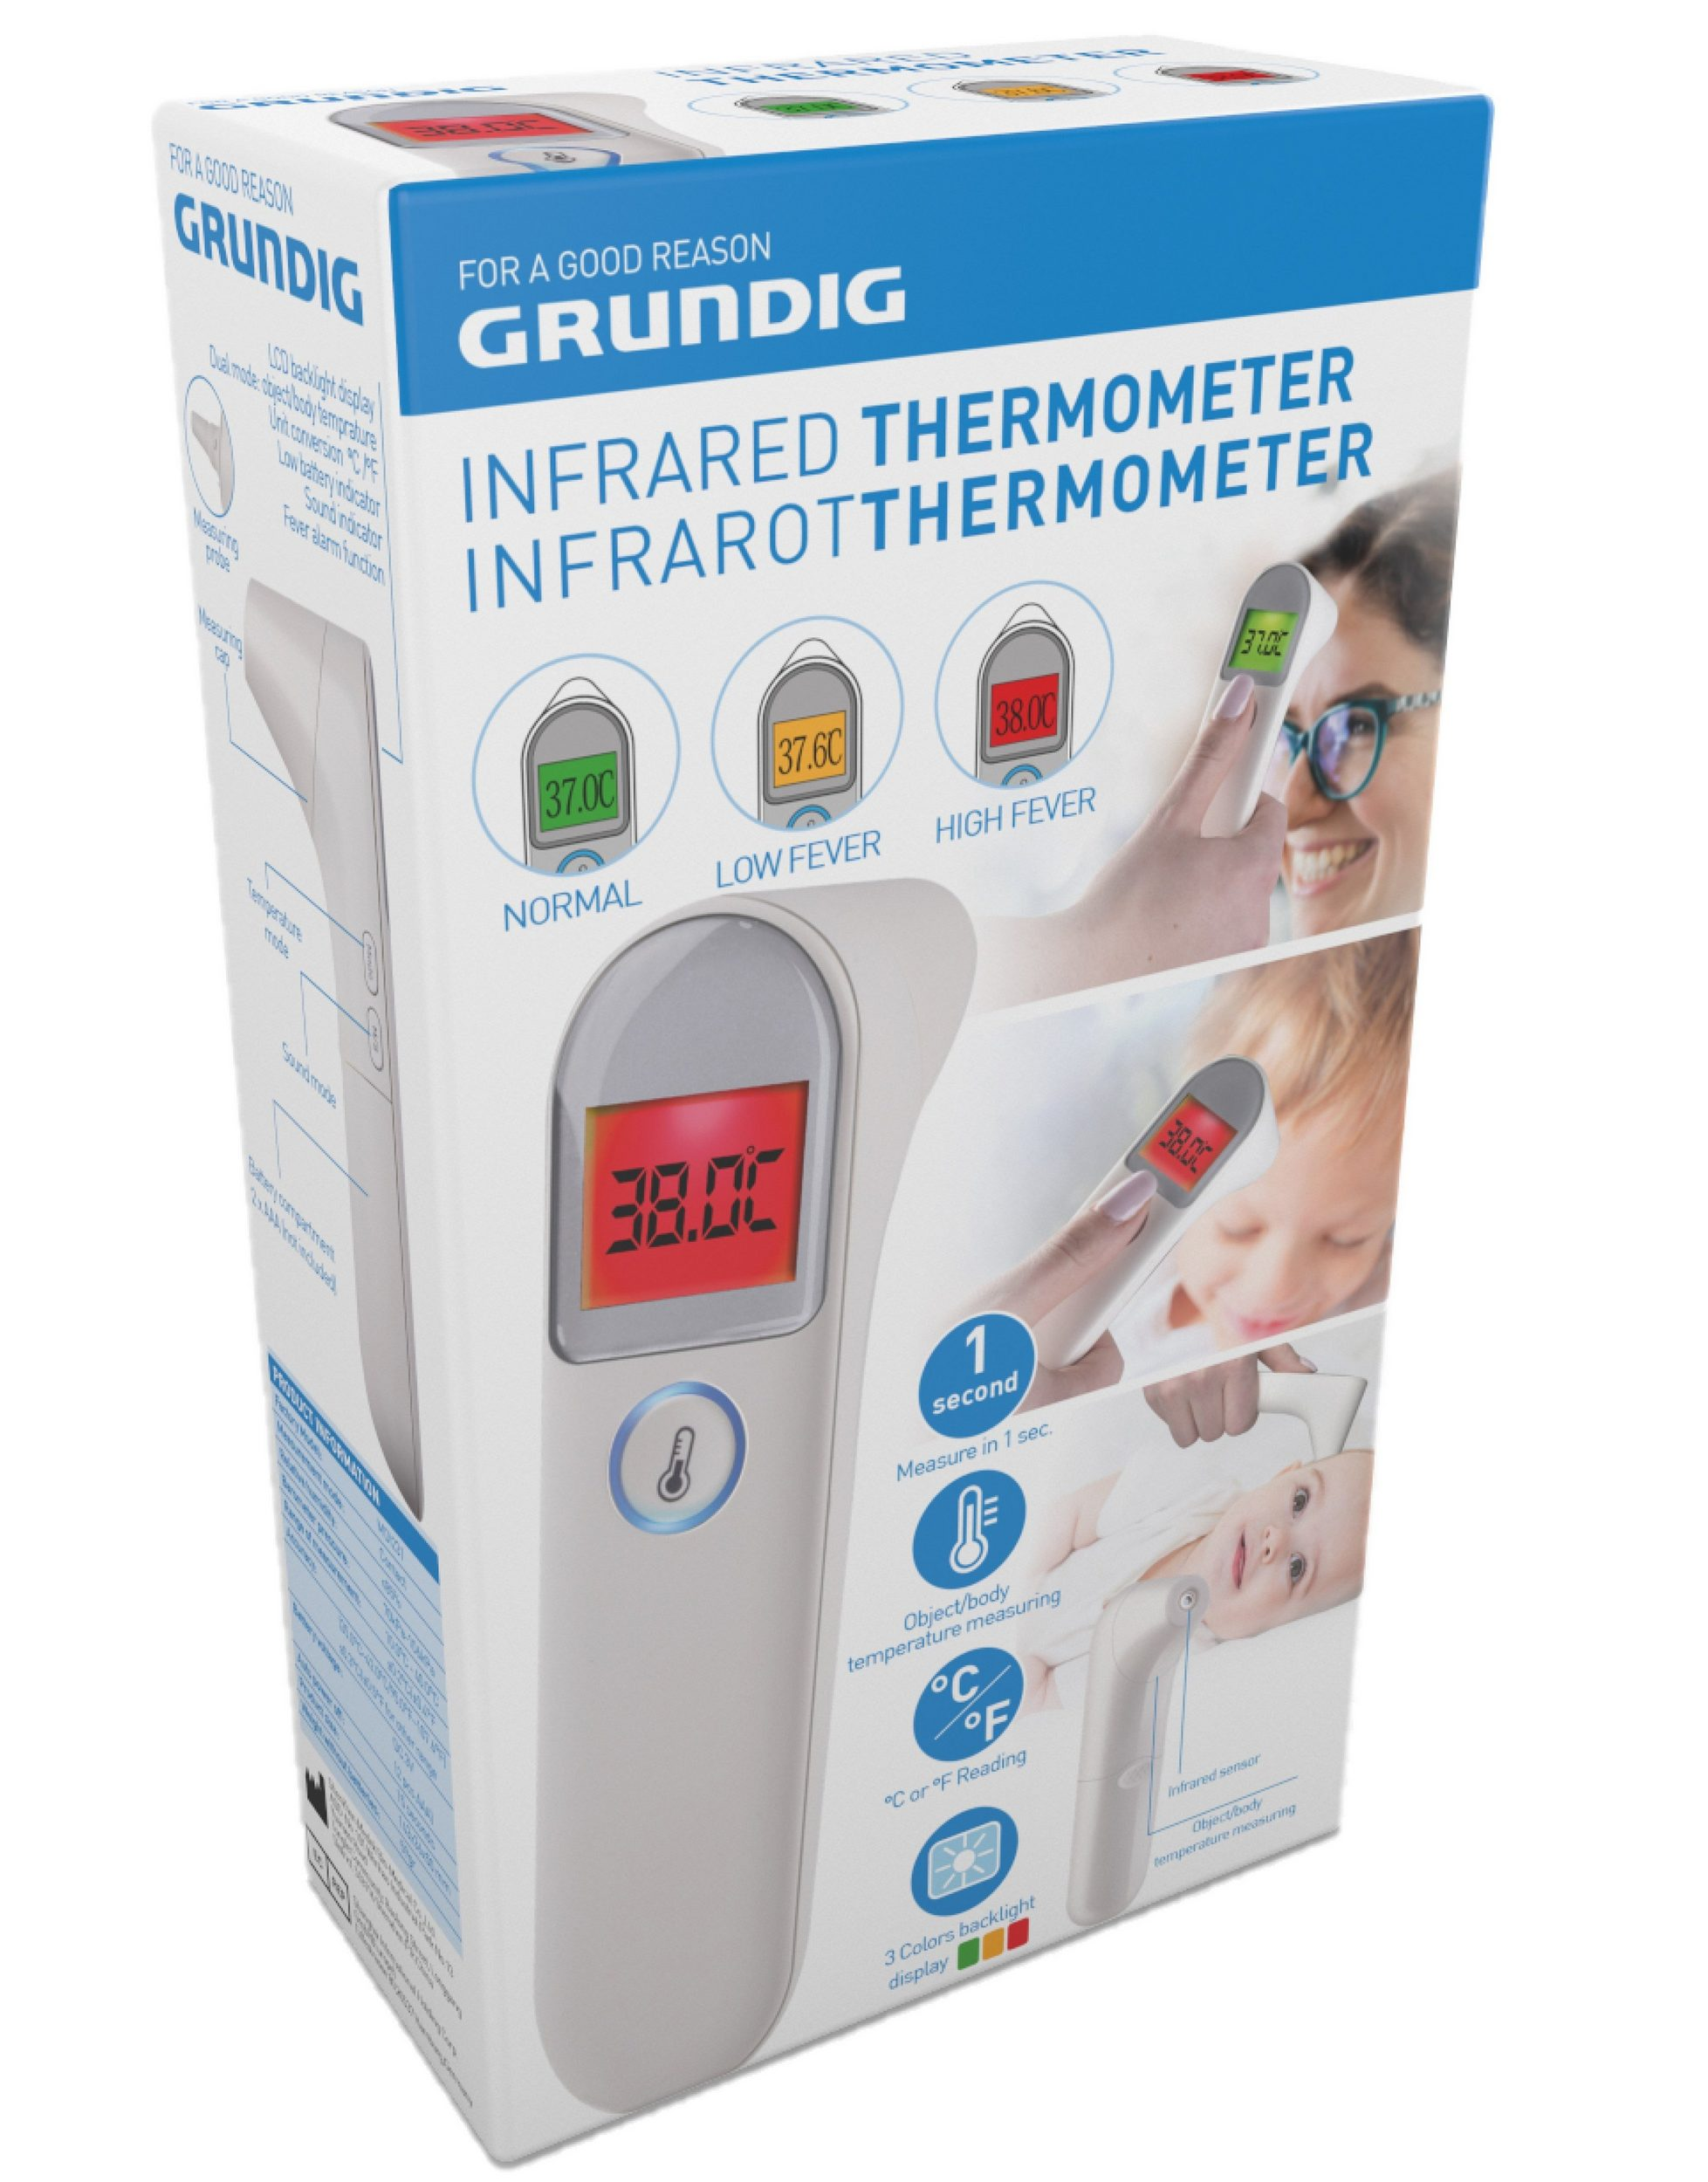 GRUNDIG Infrarot kontaktlose Infrarotmessung) Fieberthermometer (Messart